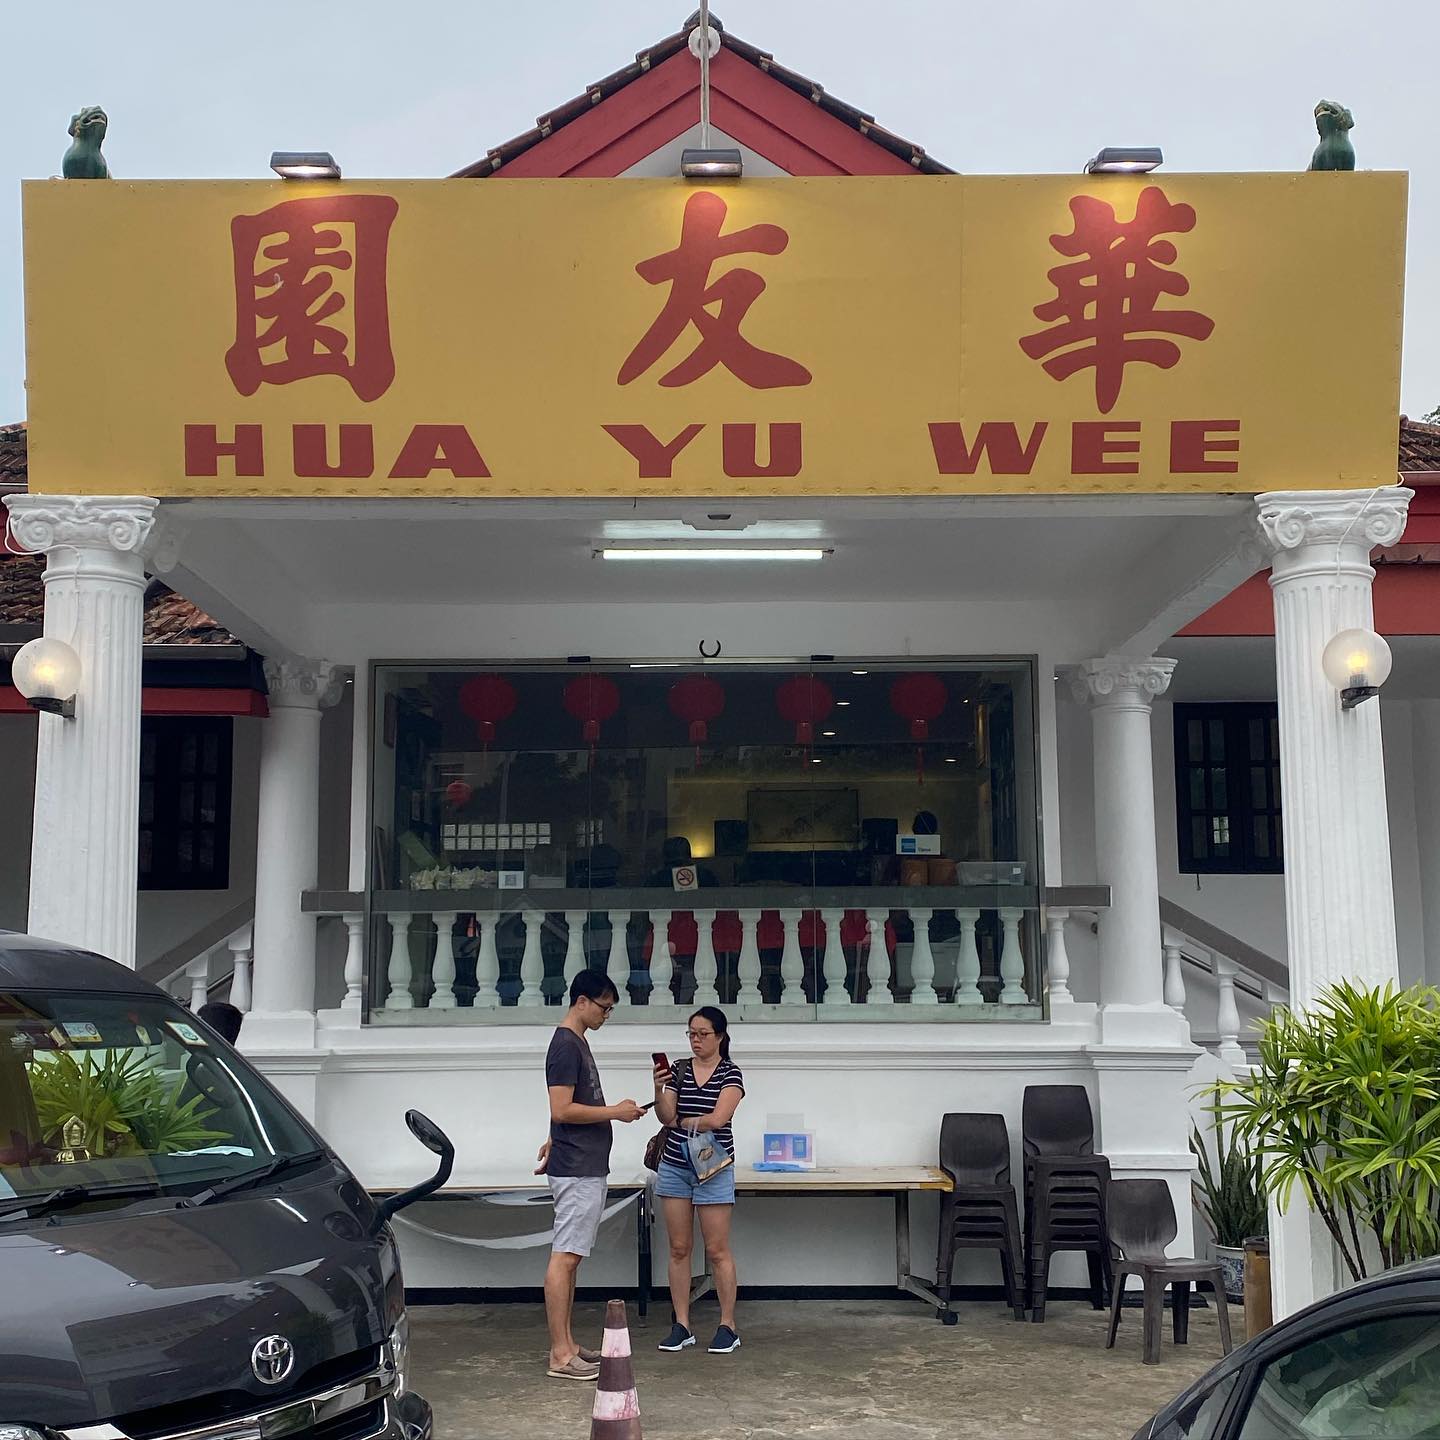 hua yu wee - storefront